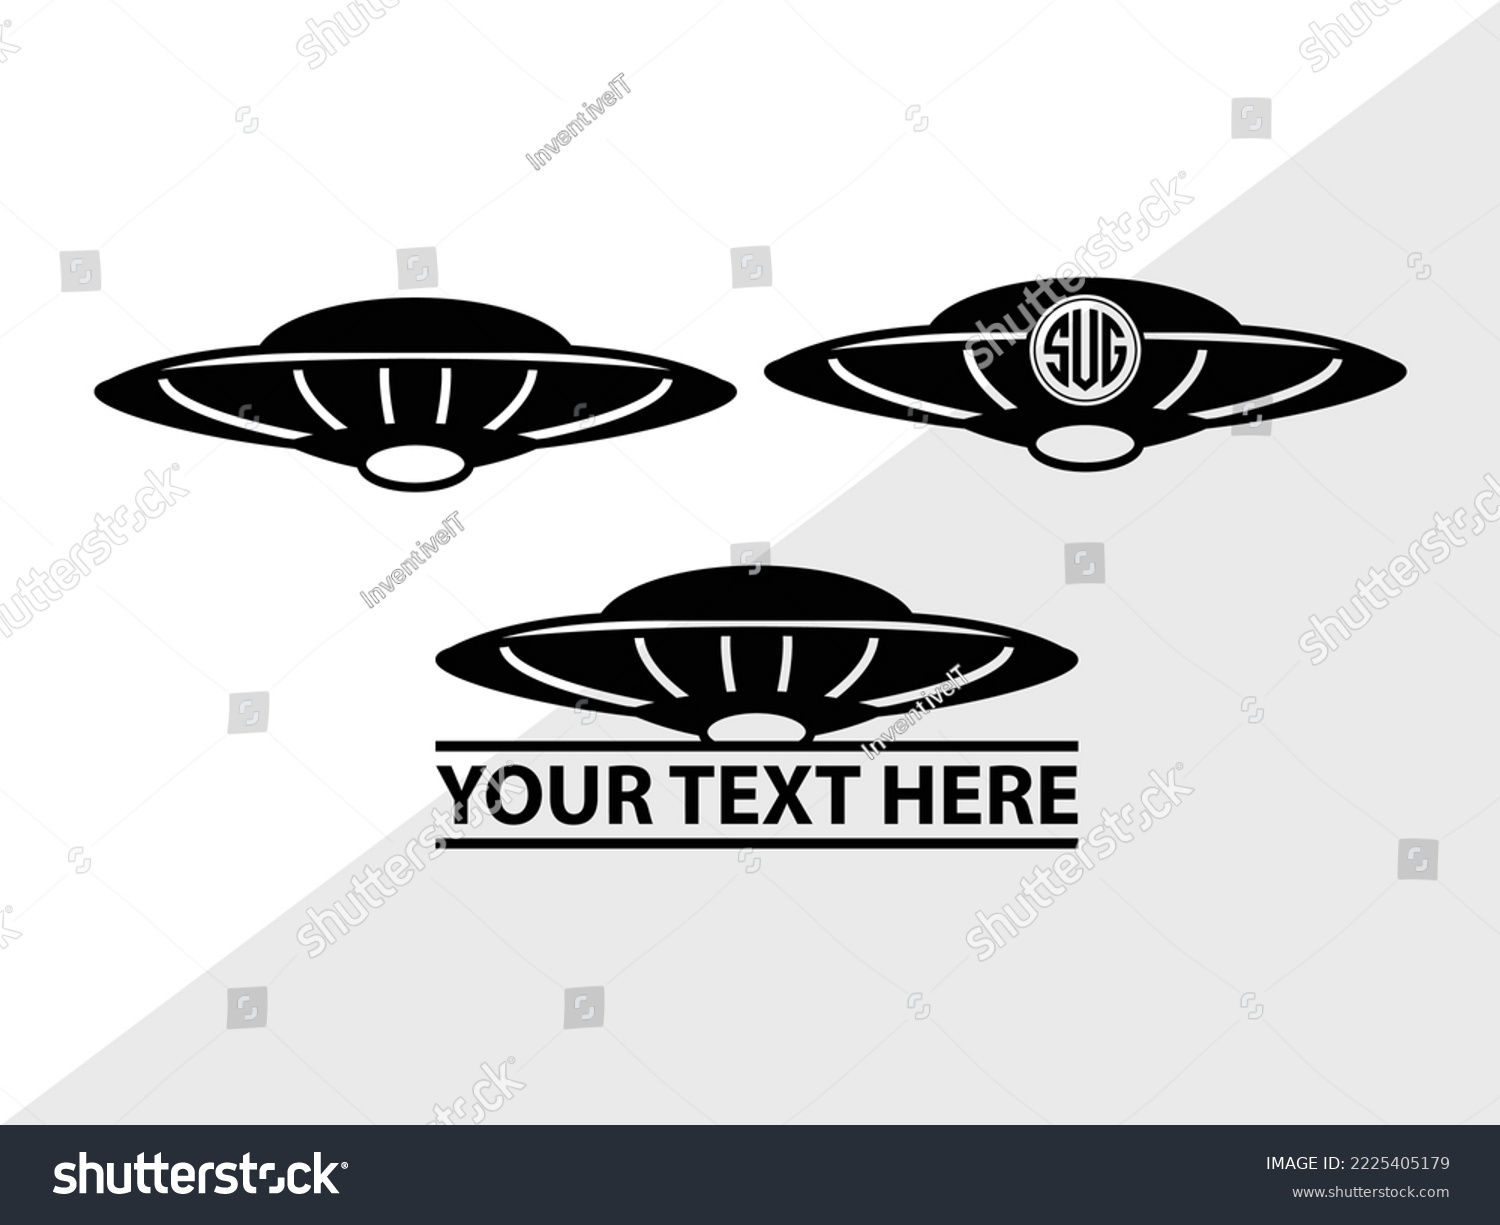 SVG of UFO Monogram Printable Vector Illustration svg